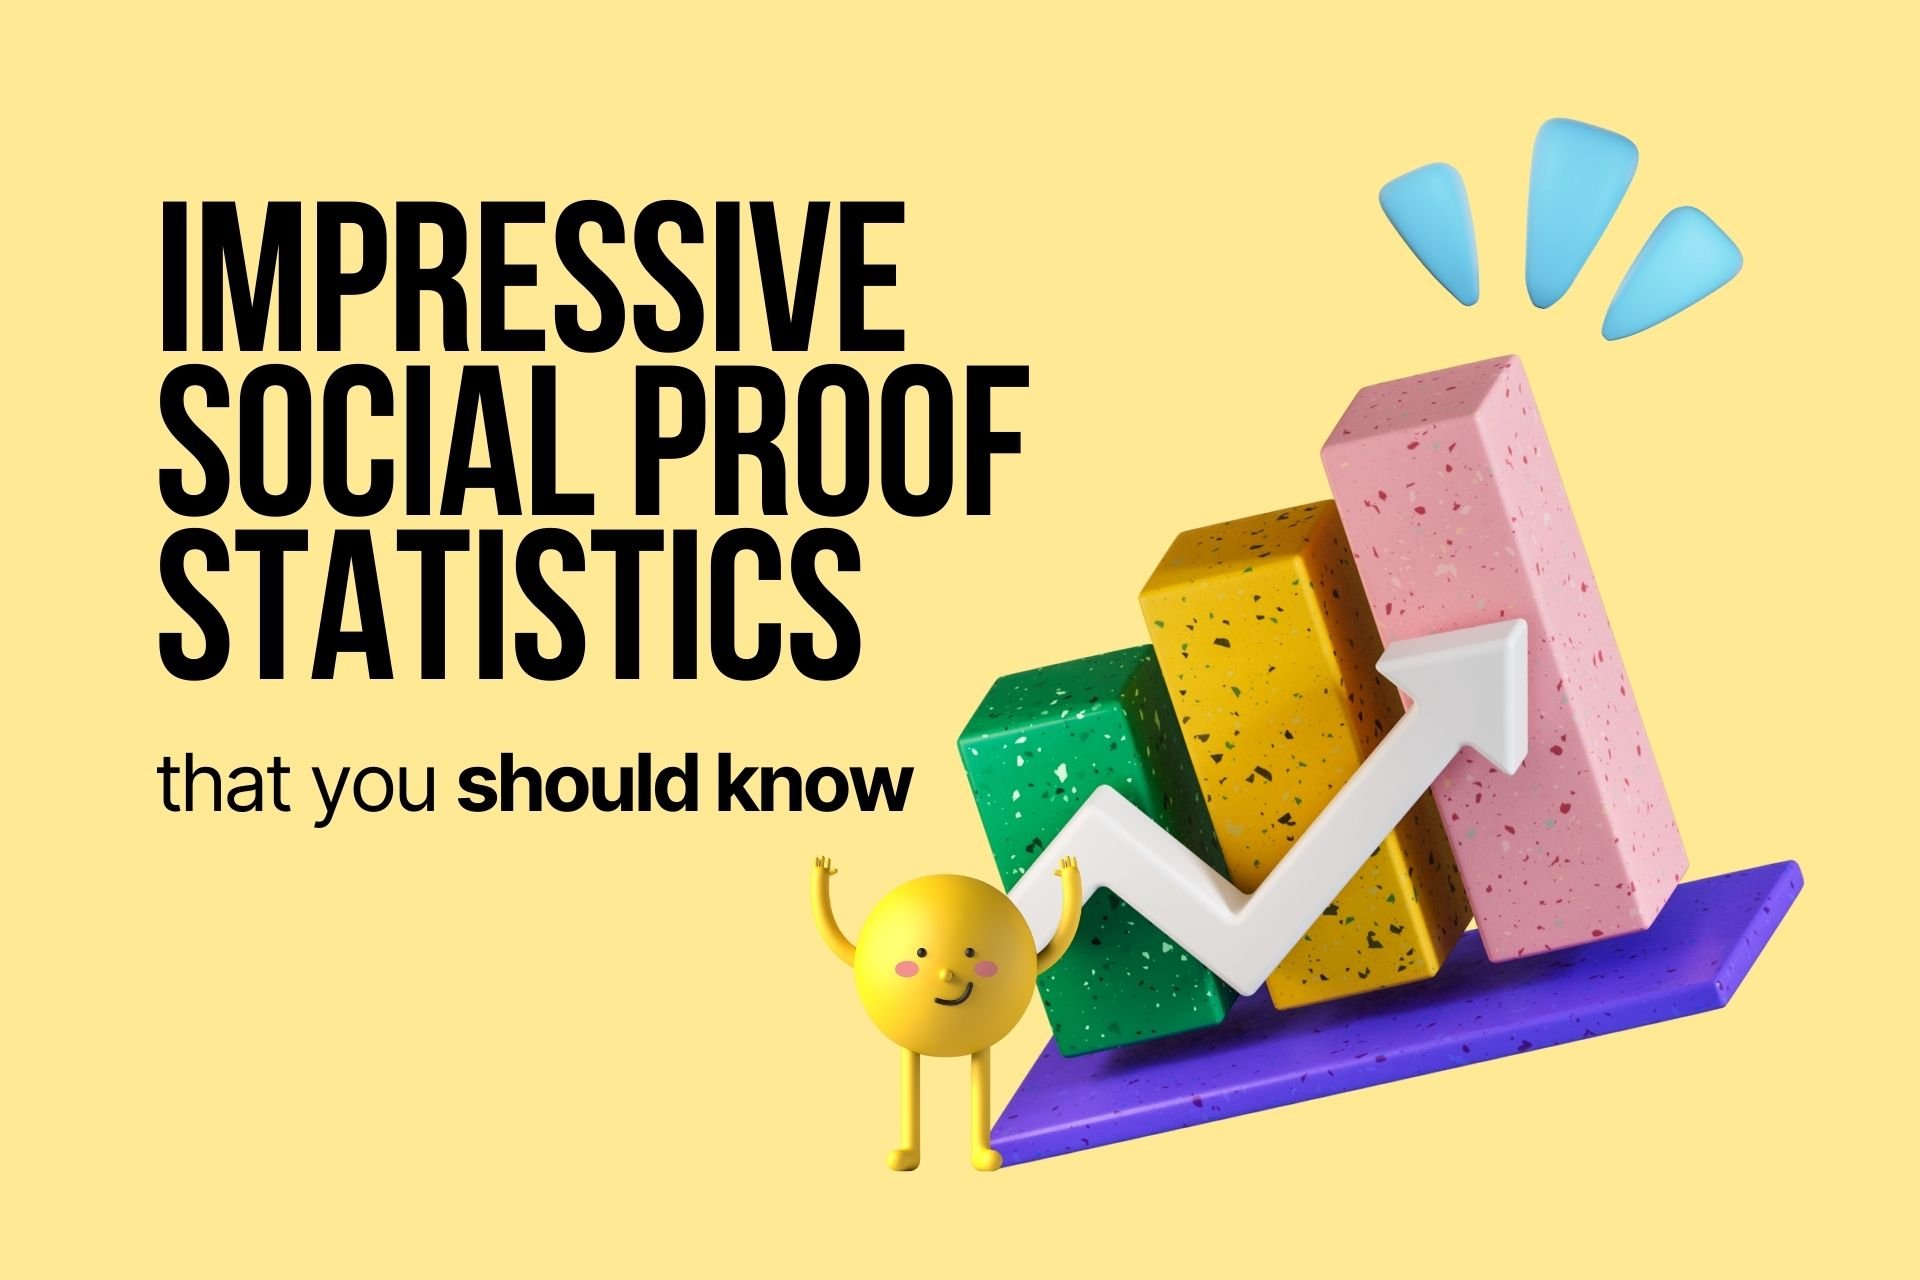 social proof statistics